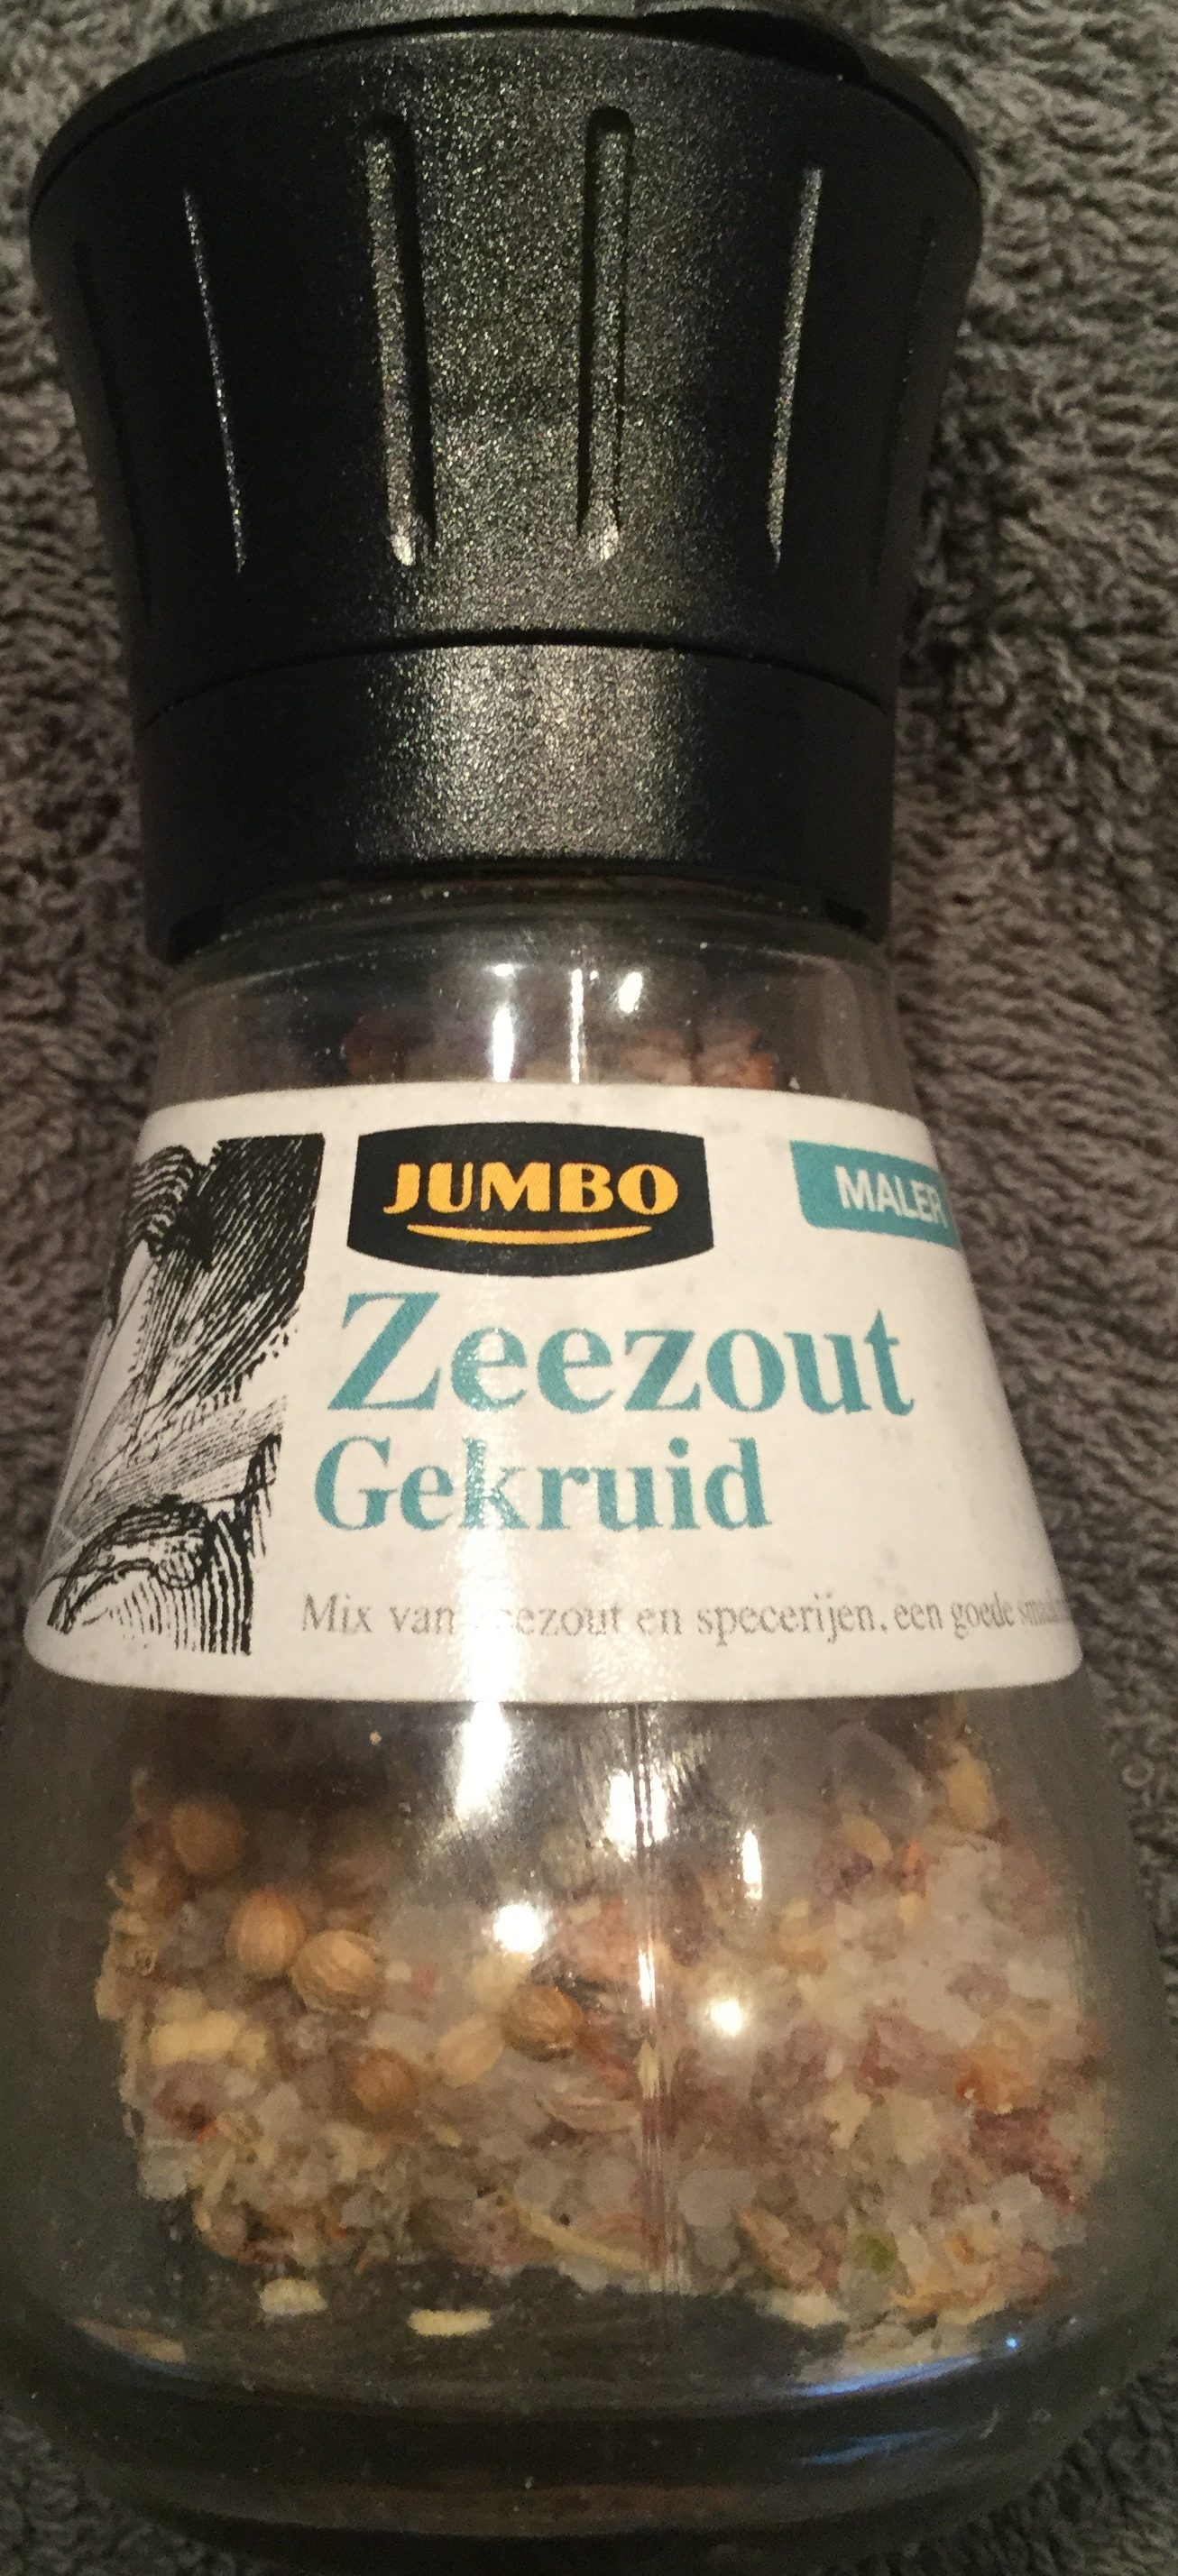 Zeezout gekruid maler - Product - nl